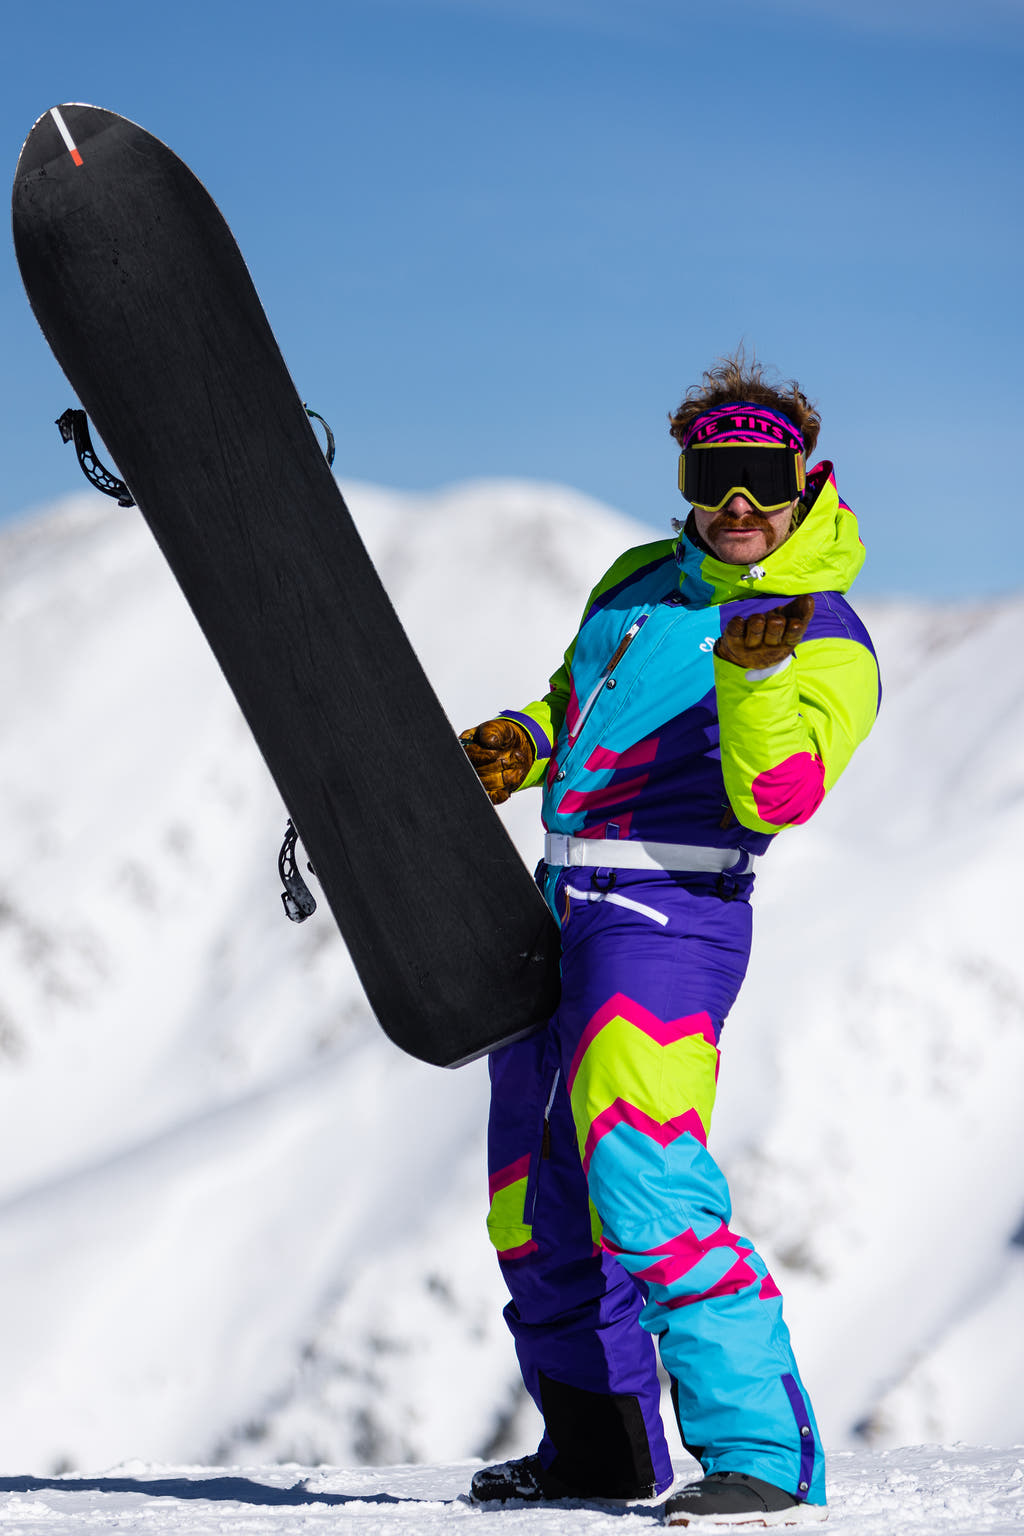 Retro Ski suit on the mountain for fun